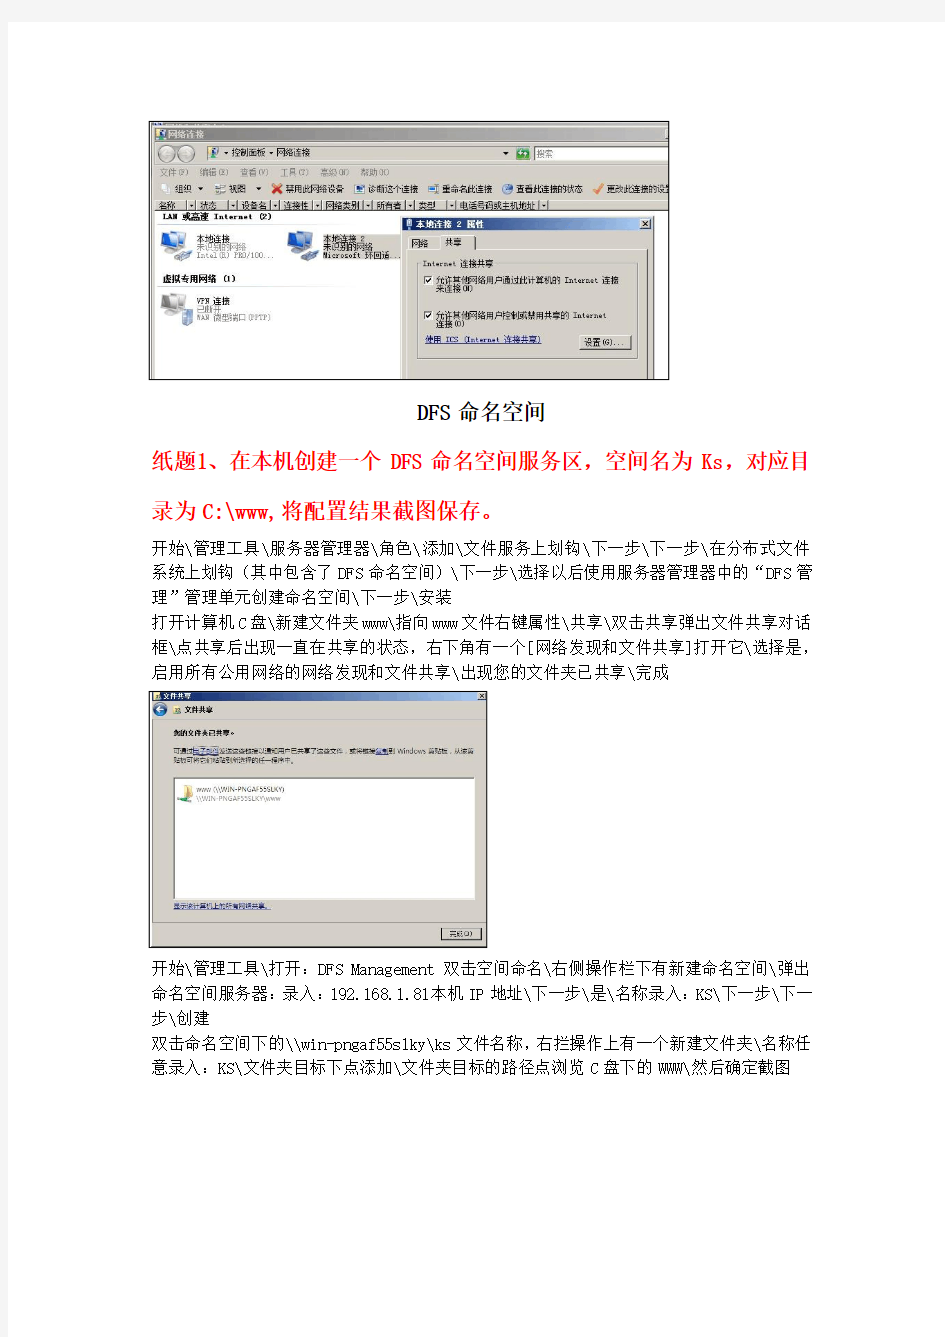 高级计算机网络管理员课堂笔记6(20120408)